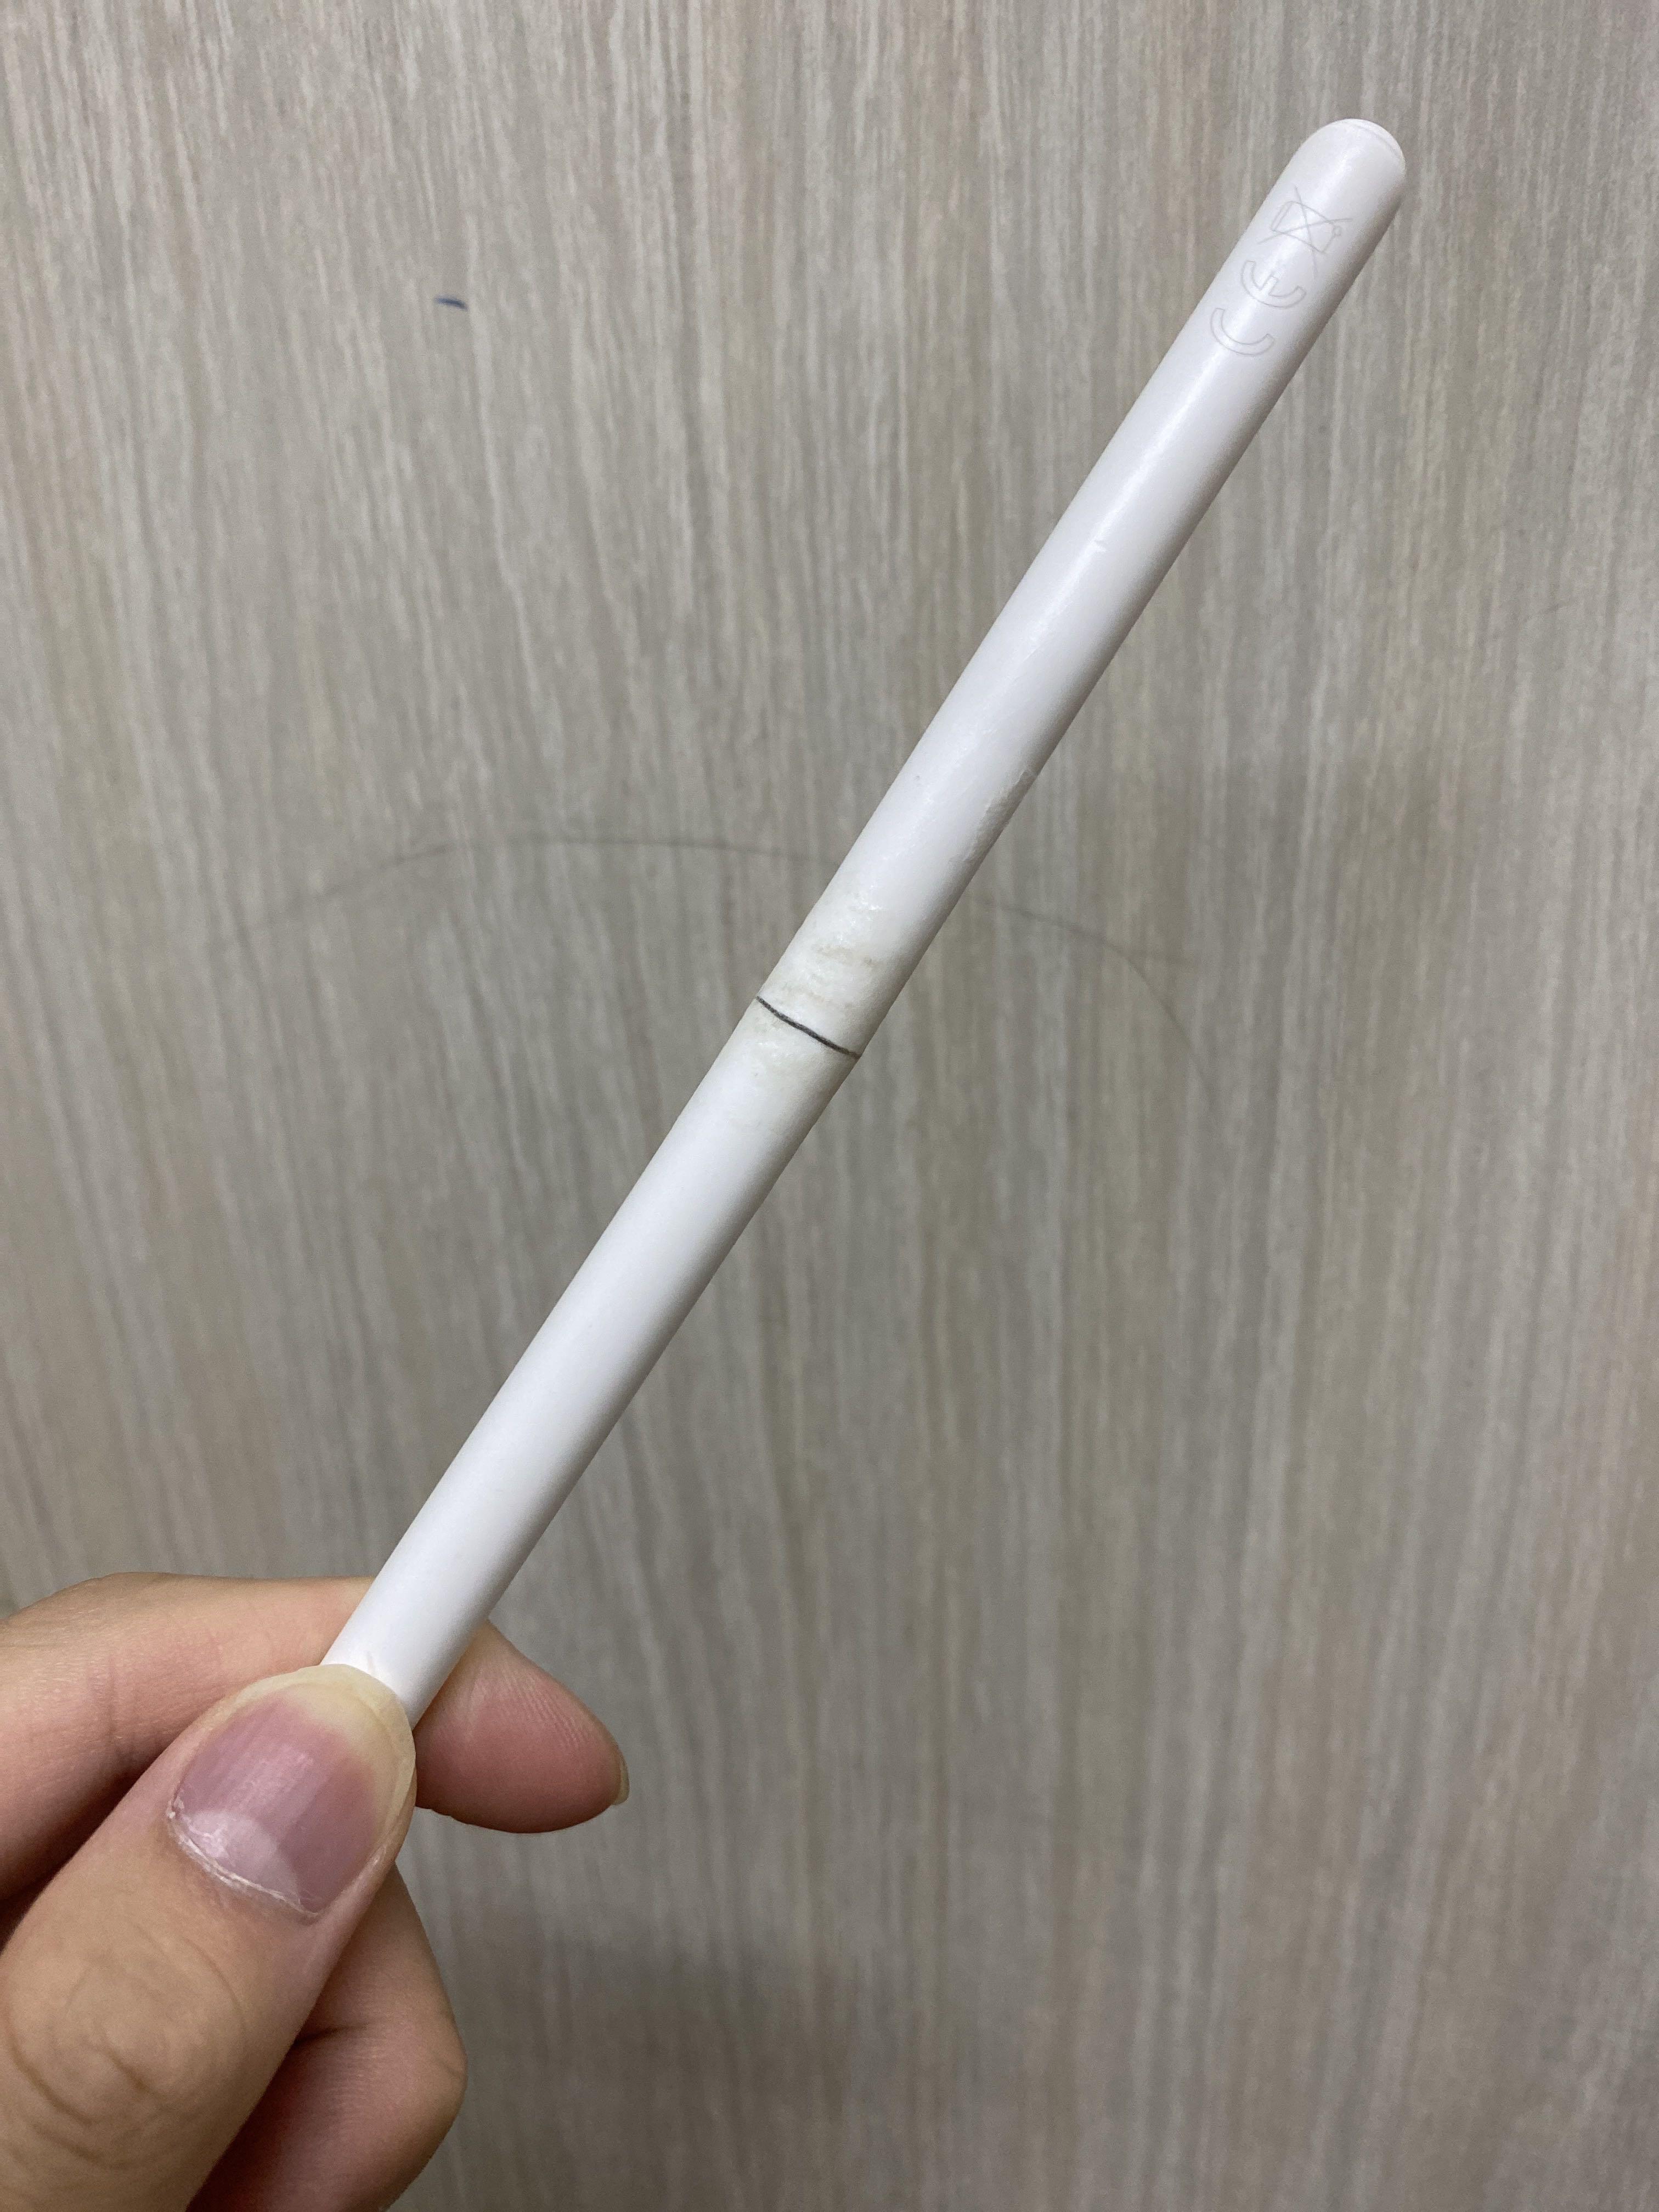 再入荷国産】 4月6日購入Apple Pencil第二世代 ex5bf-m79065400213